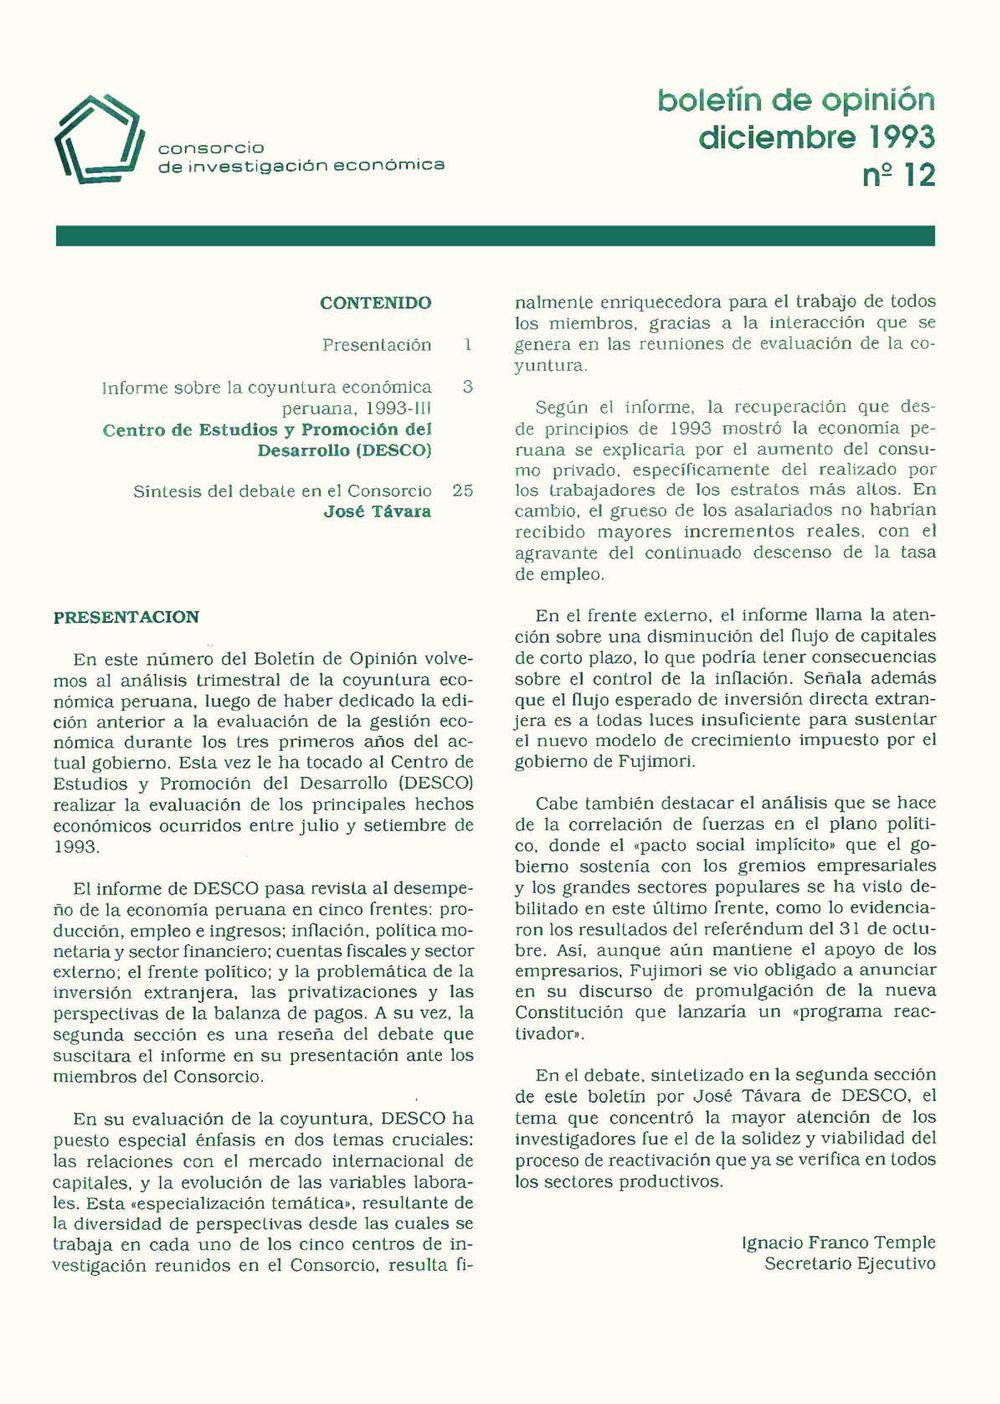 Boletín de opinión: Análisis de la economía peruana, 1993-III